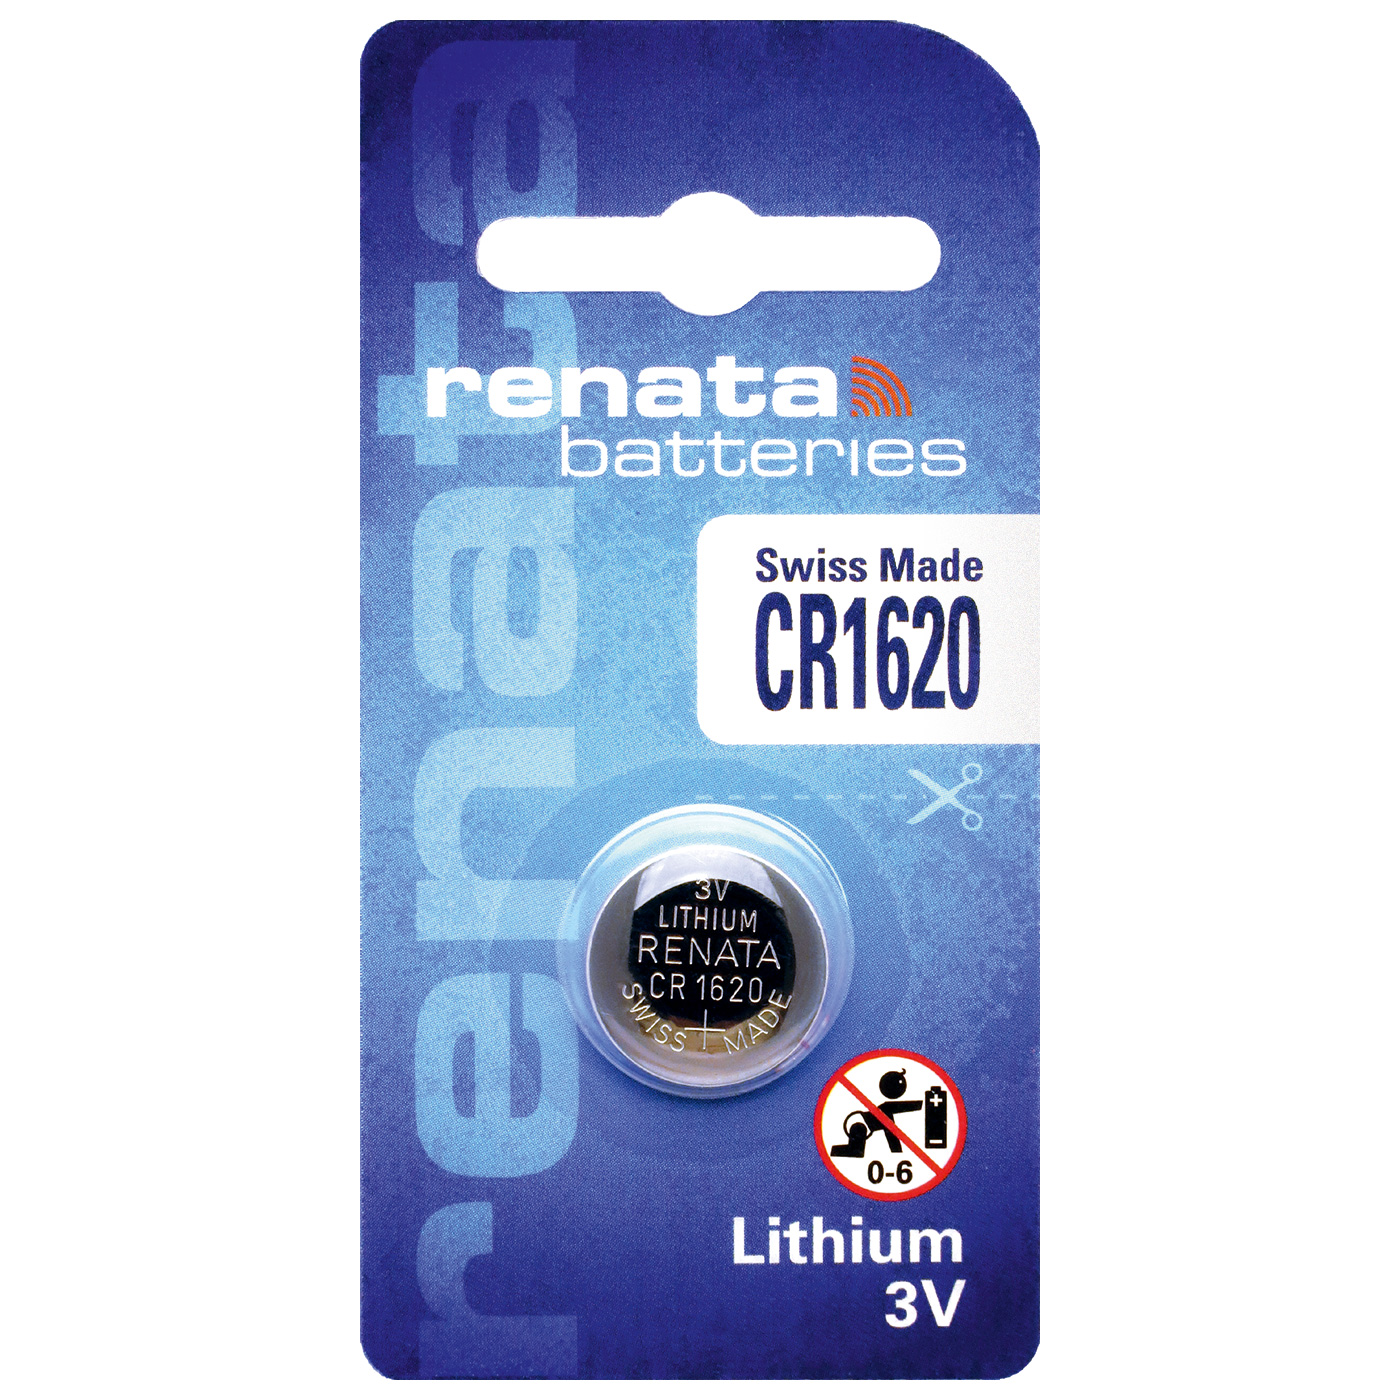 Renata CR 1620 lithium